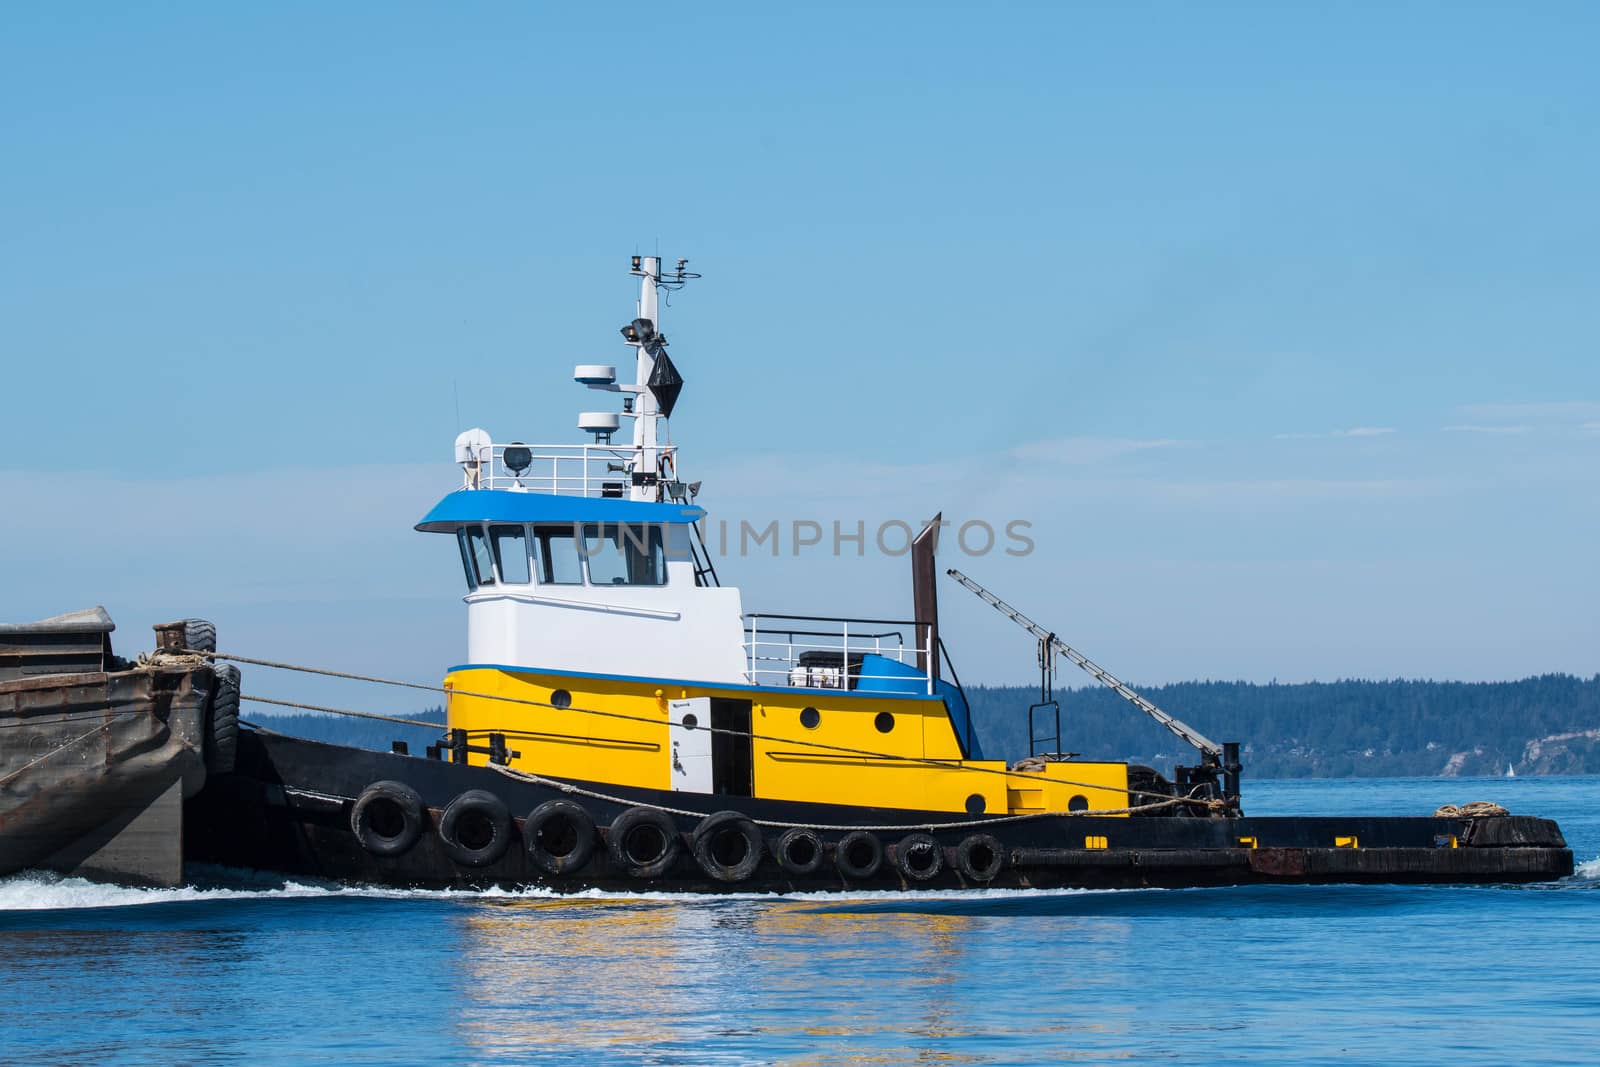 Tug pushing a barge